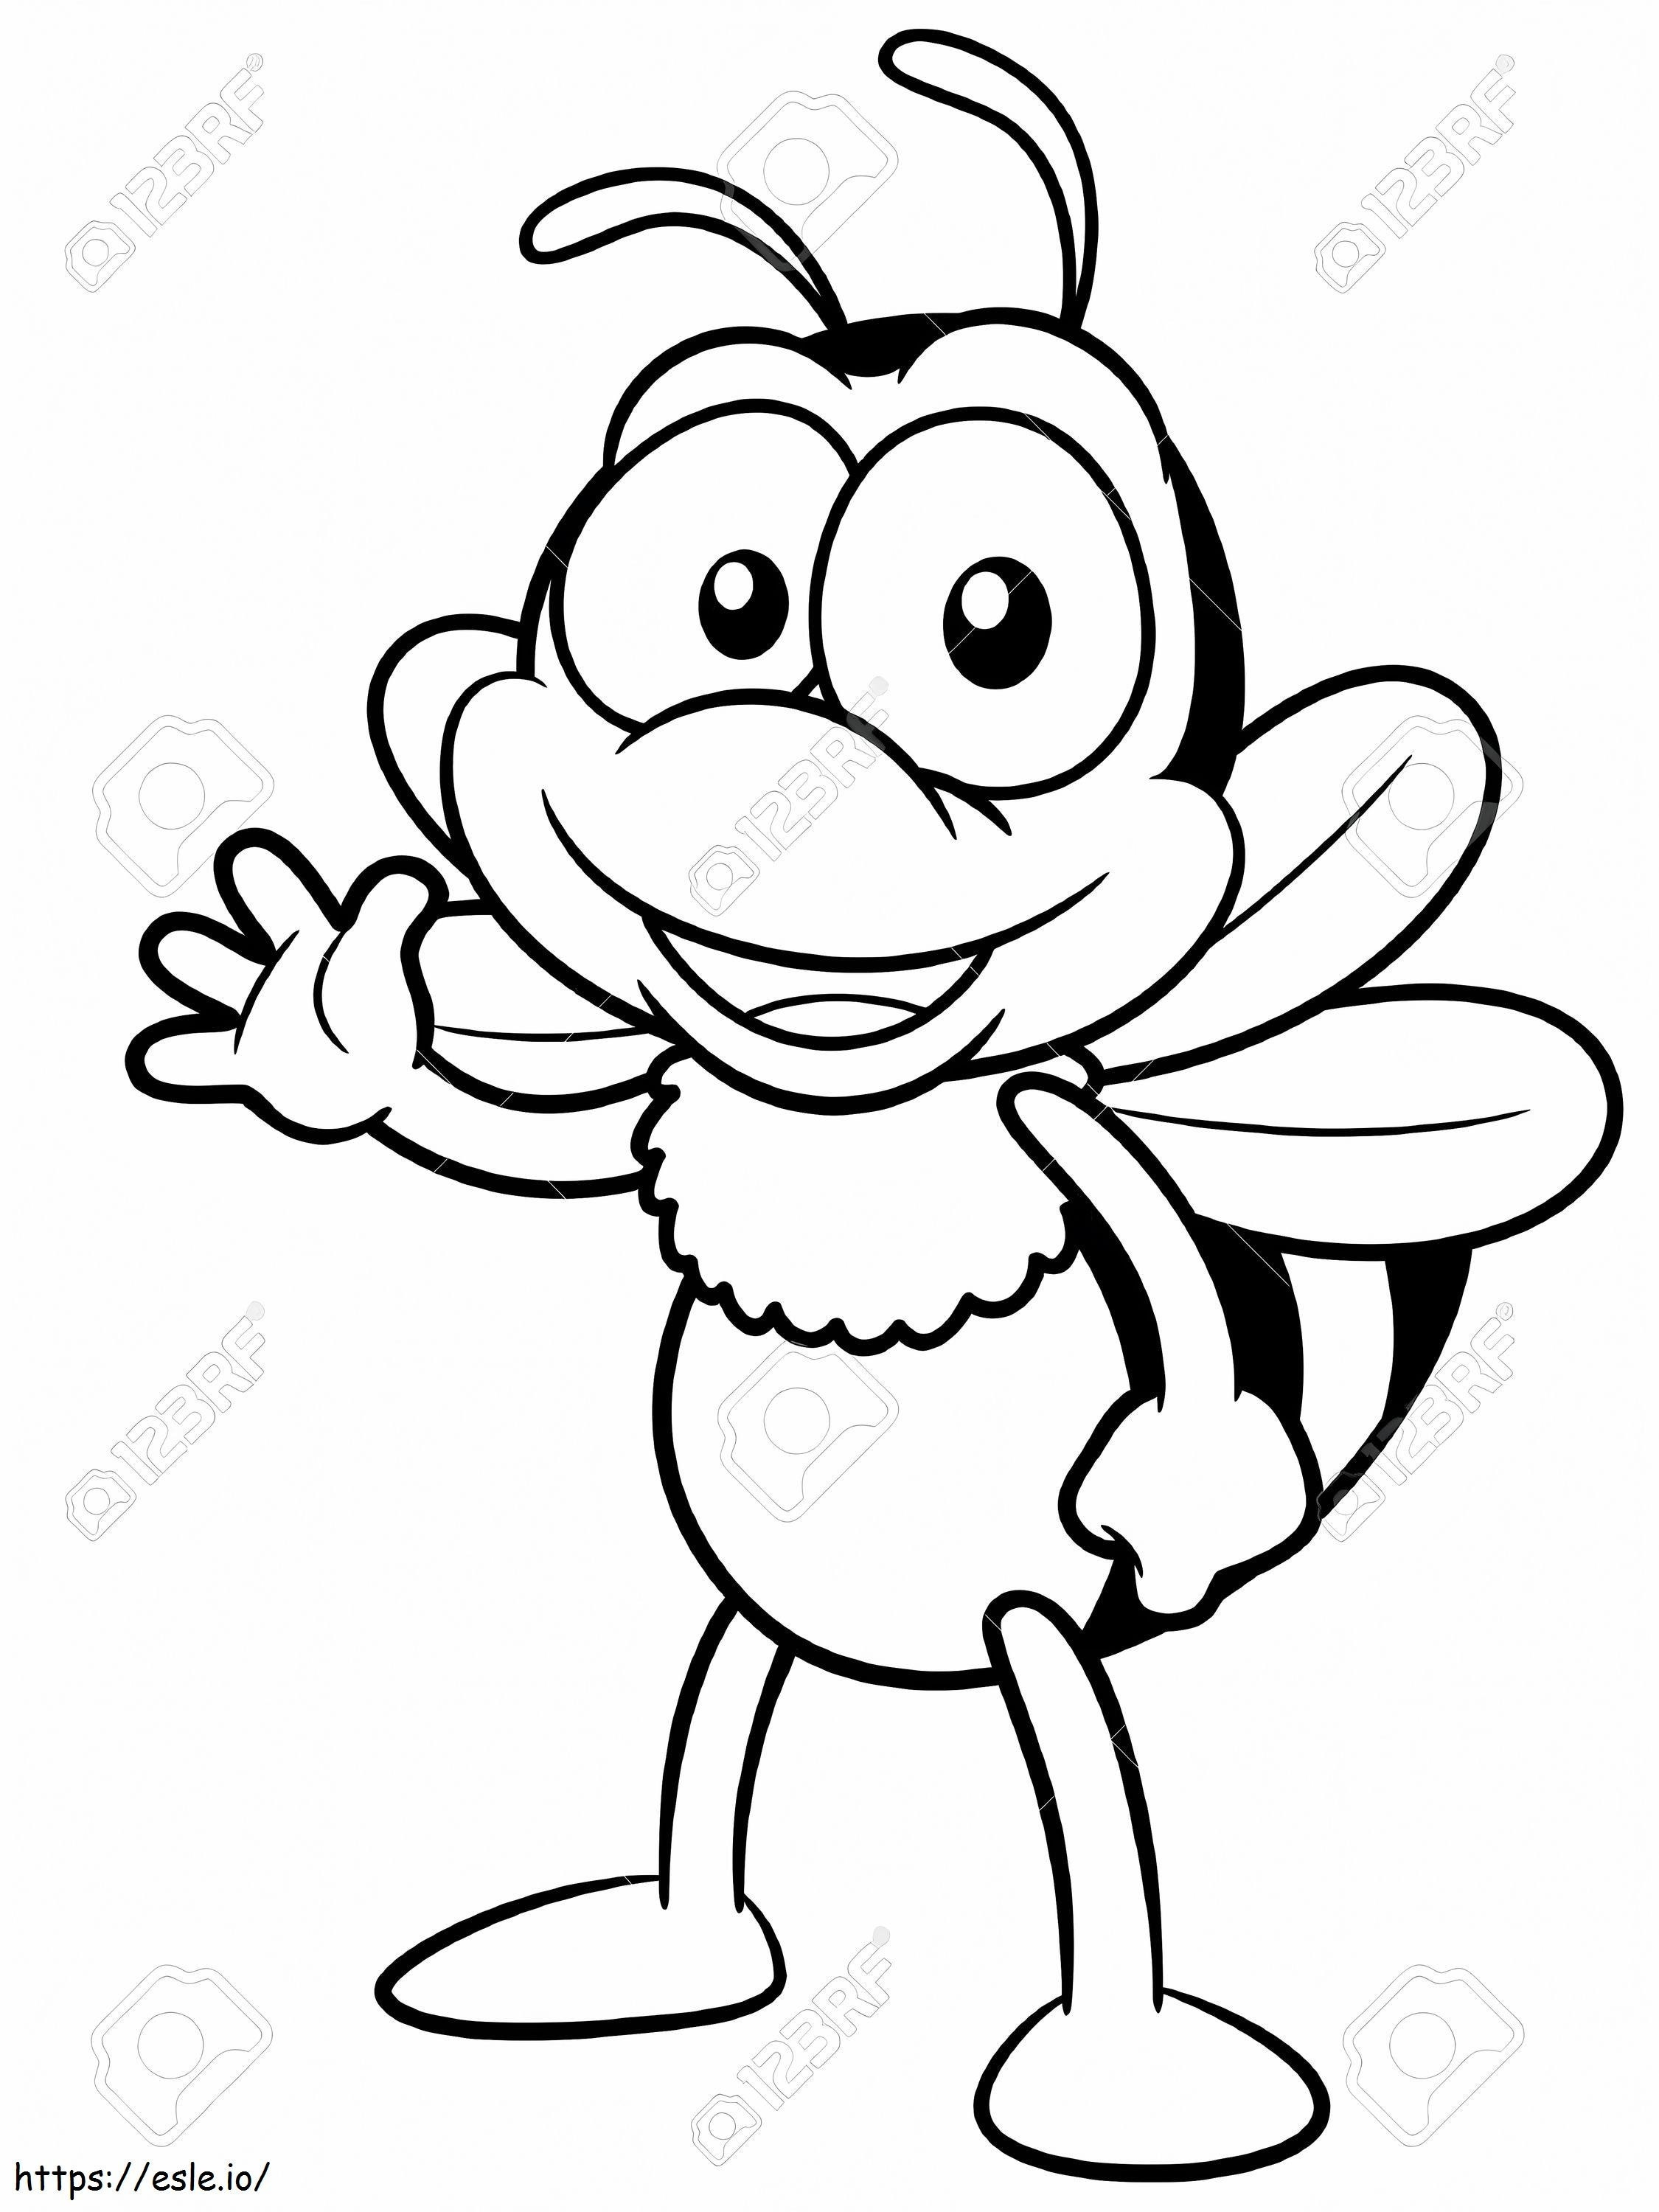 1571359405_17813670 Ilustração do livro para colorir de abelha de desenho animado para colorir